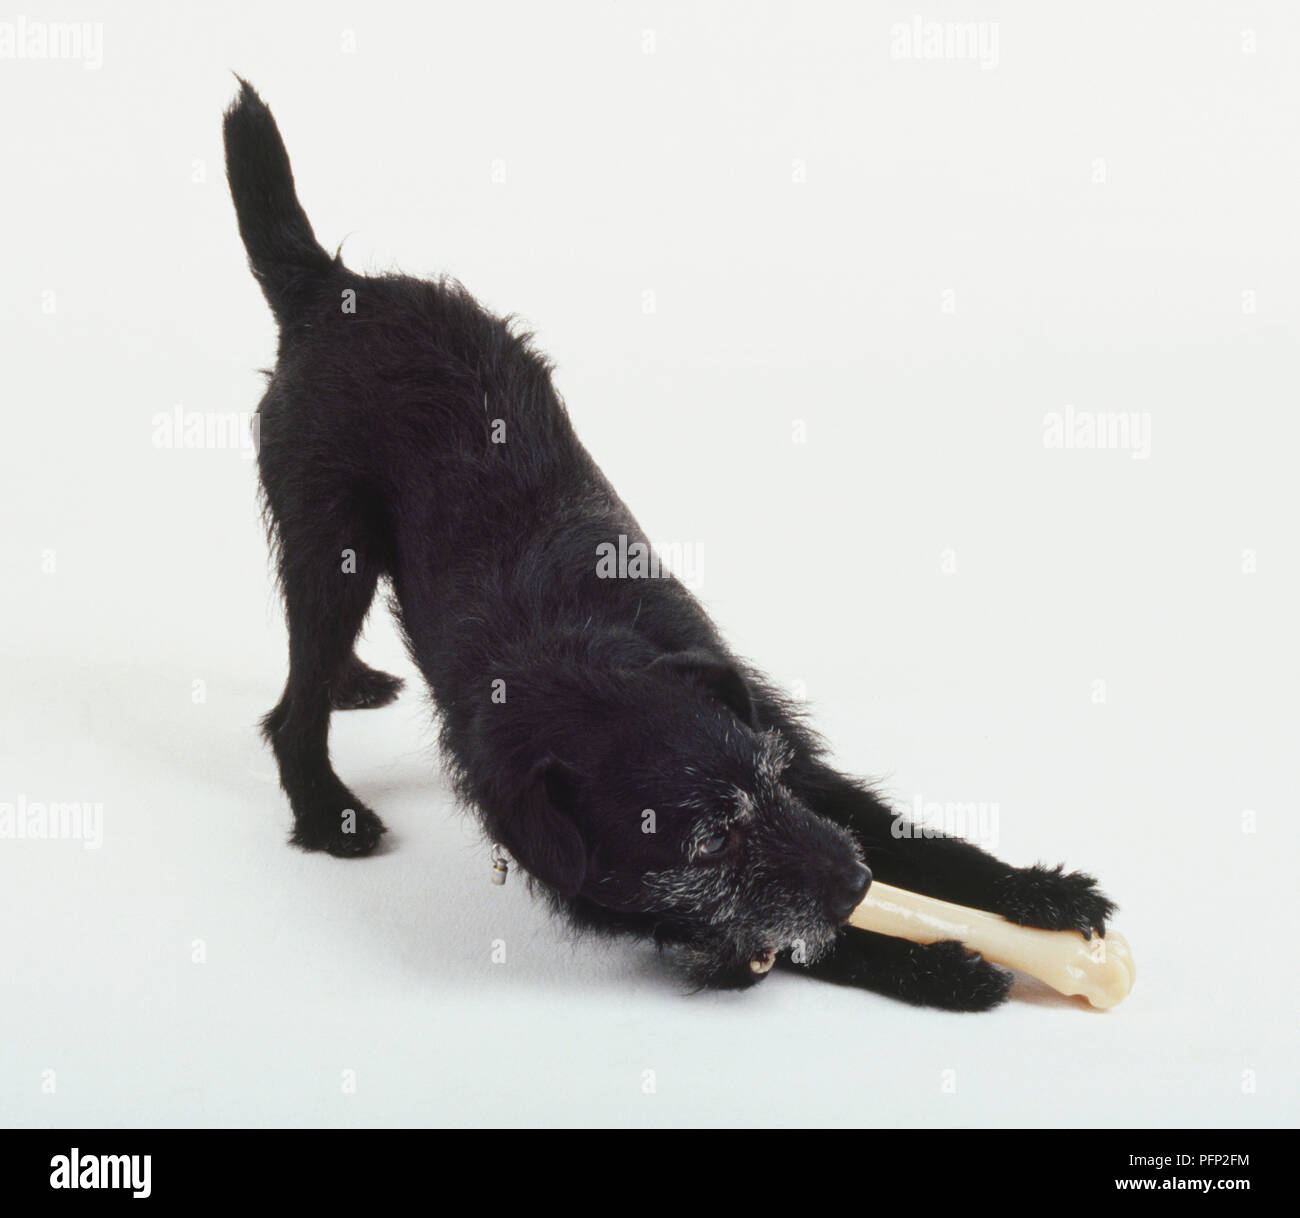 Einen zotteligen schwarzen Hund kaut auf einem zylindrischen Knochen oder Spielzeug, während sich mit der Hinterhand in der Luft. Stockfoto